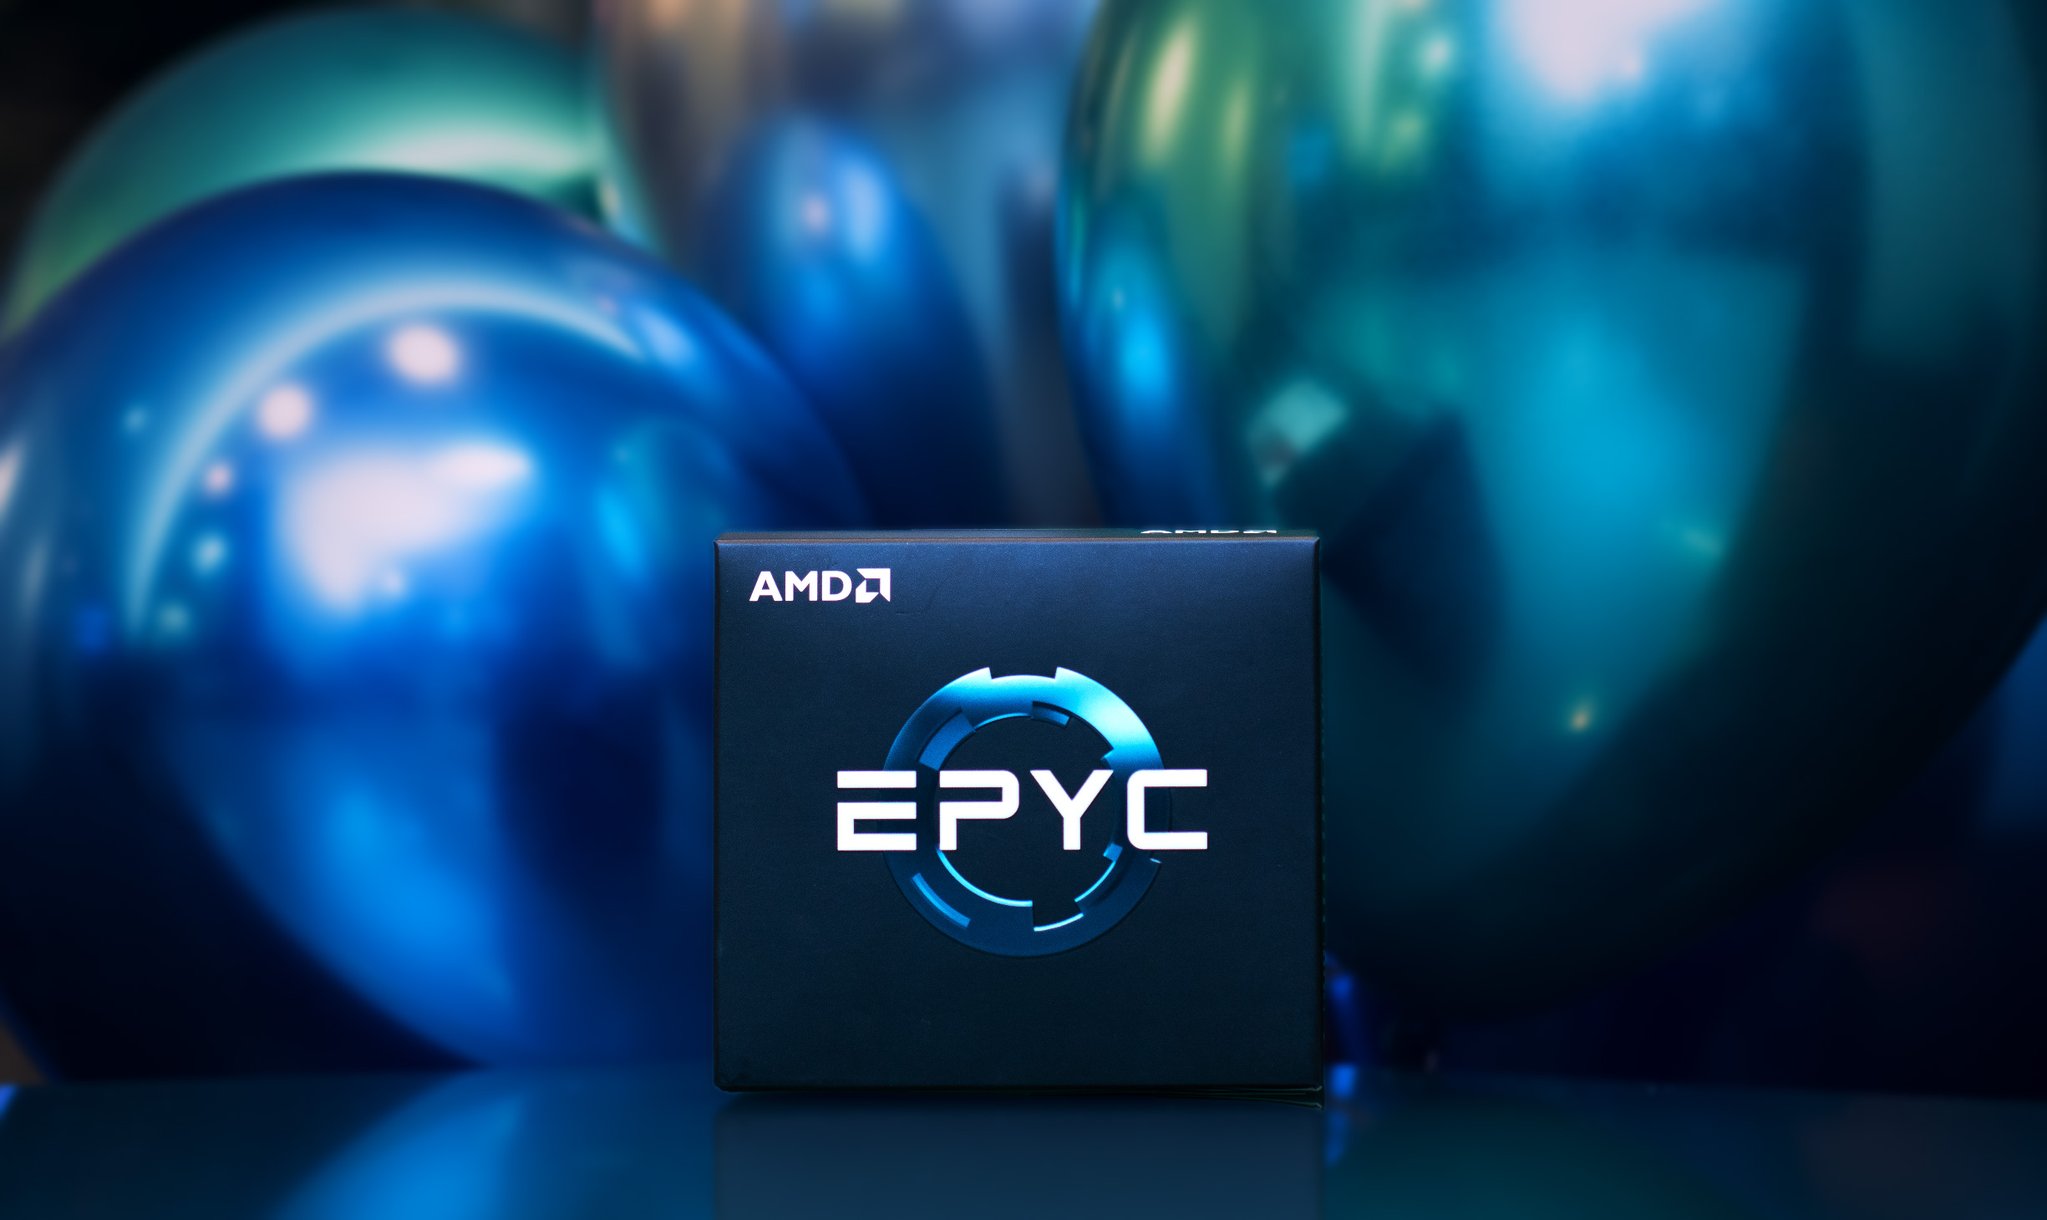 Le CPU Ryzen ed Epyc fanno volare AMD nel secondo trimestre thumbnail